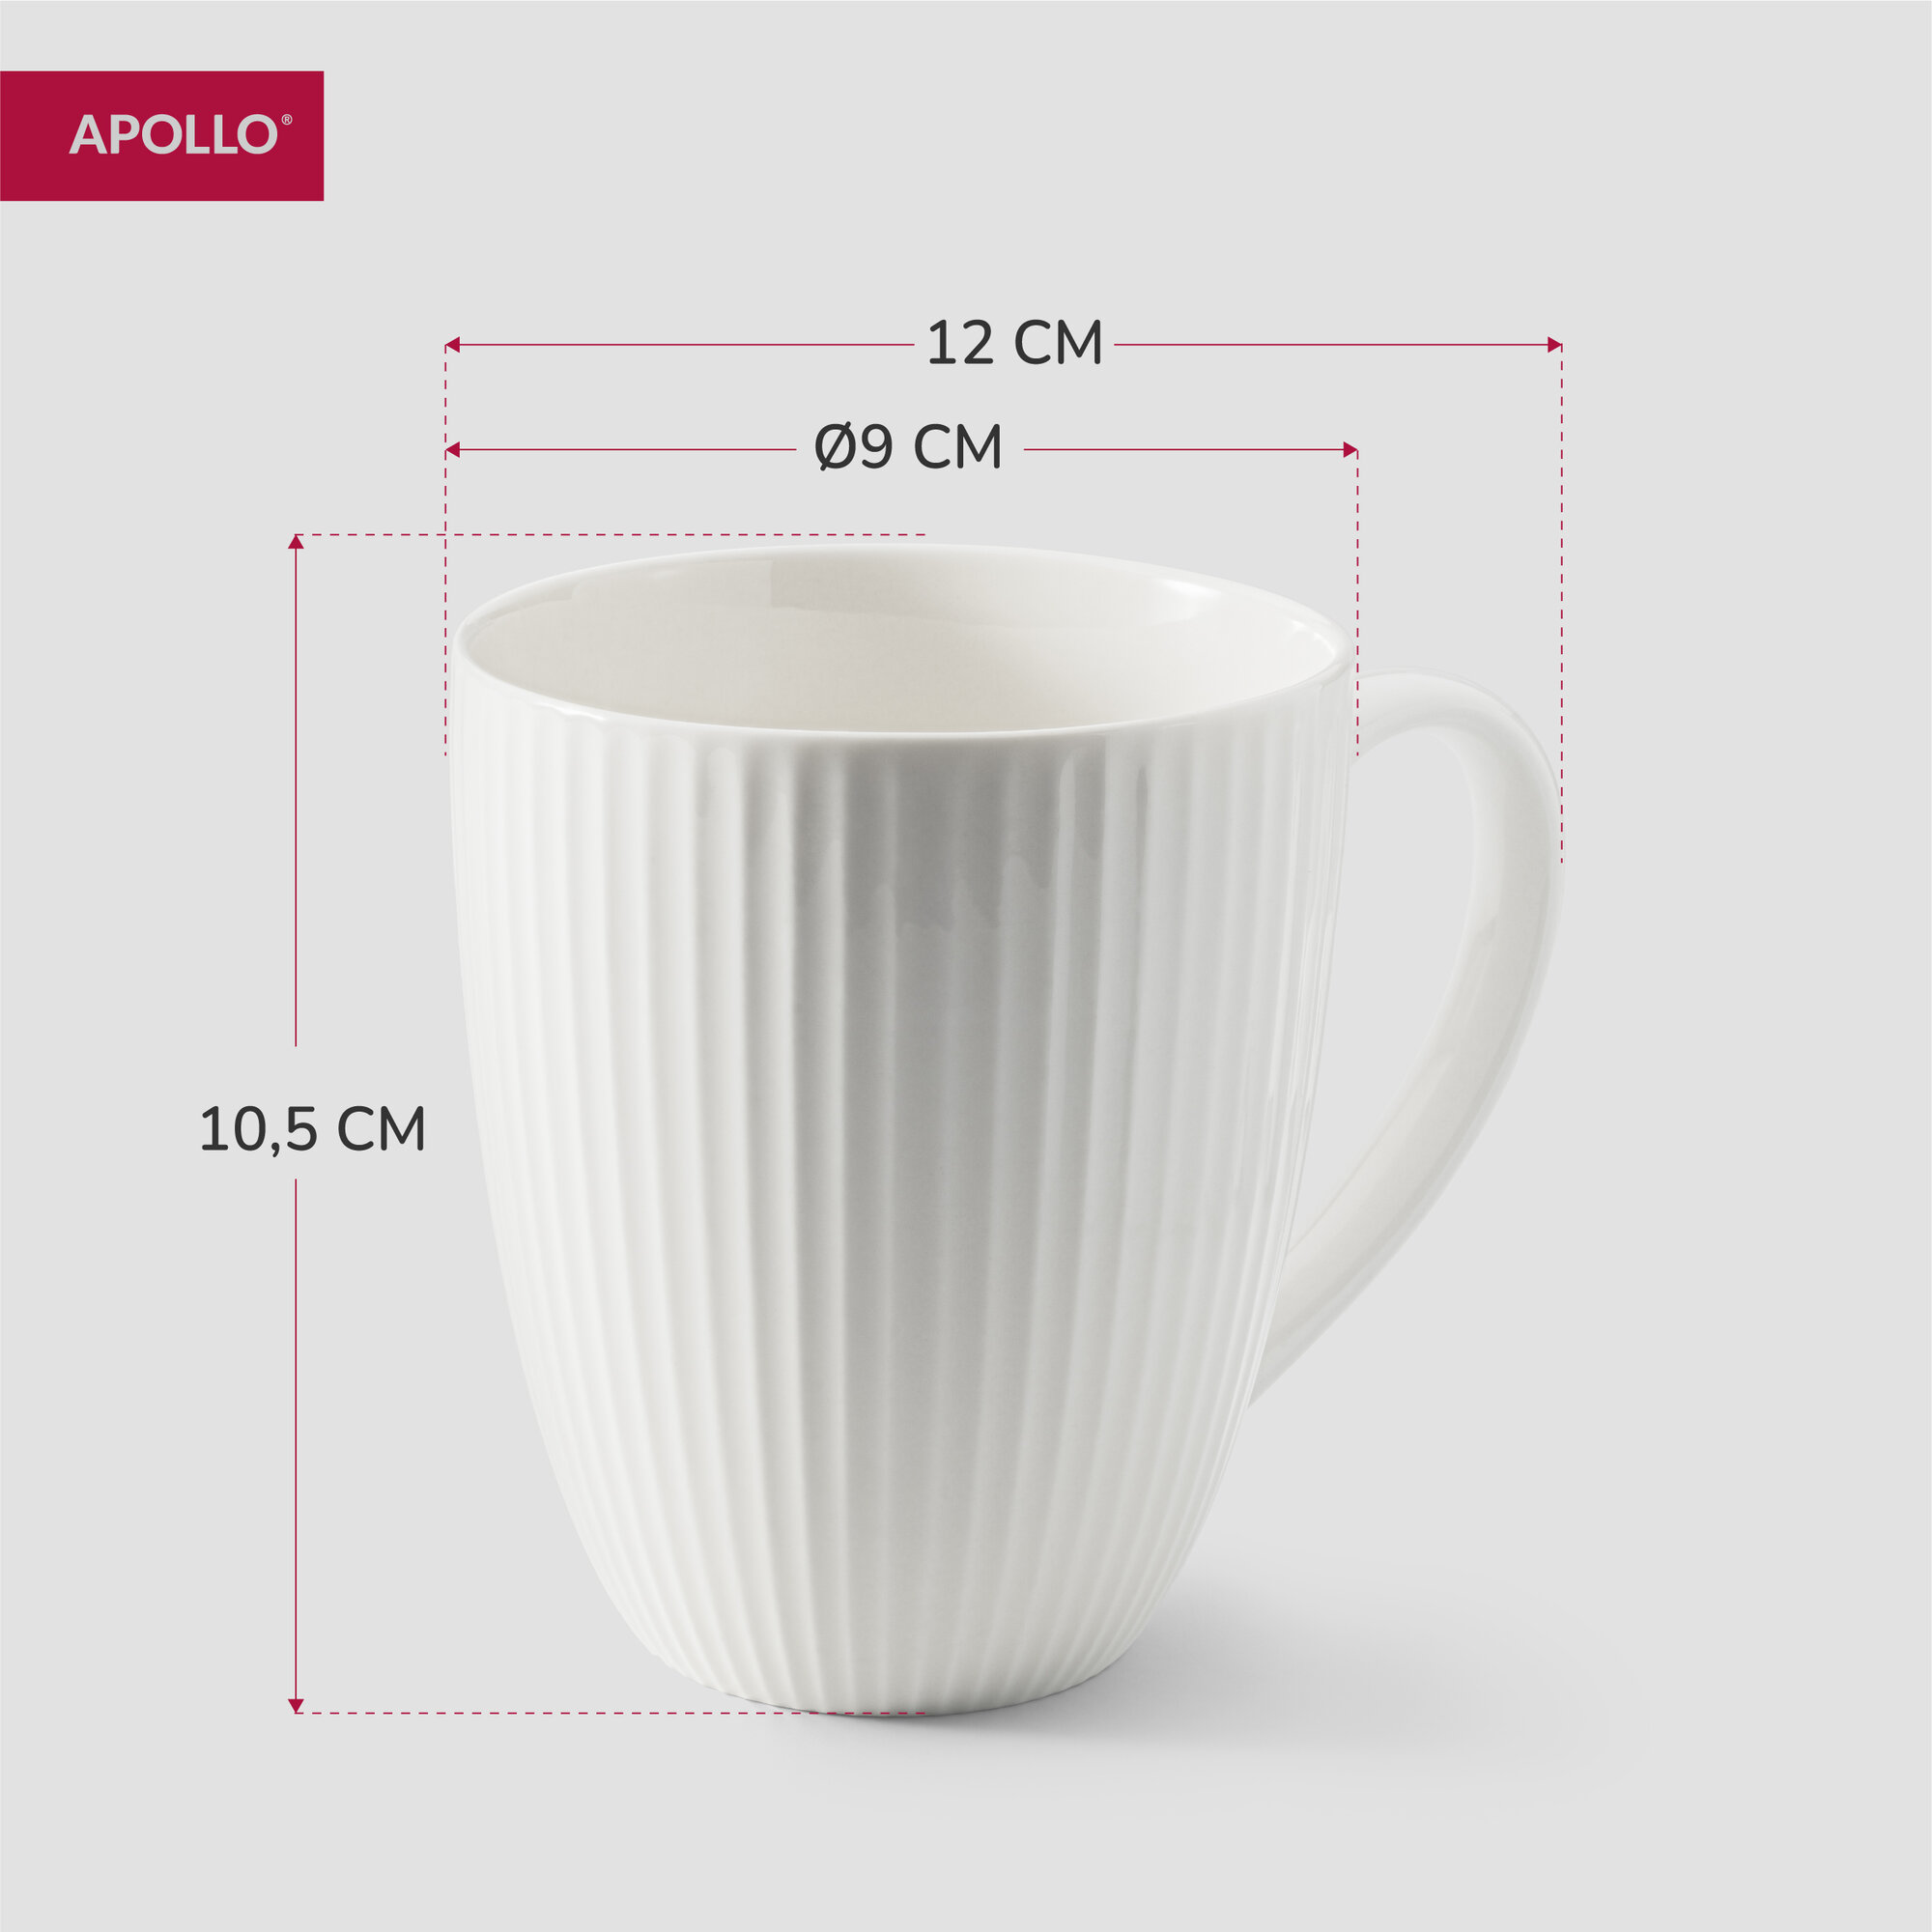 Кружка фарфоровая, набор чашек для чая и кофе Apollo "Raffinato" 420 мл, 2 предмета